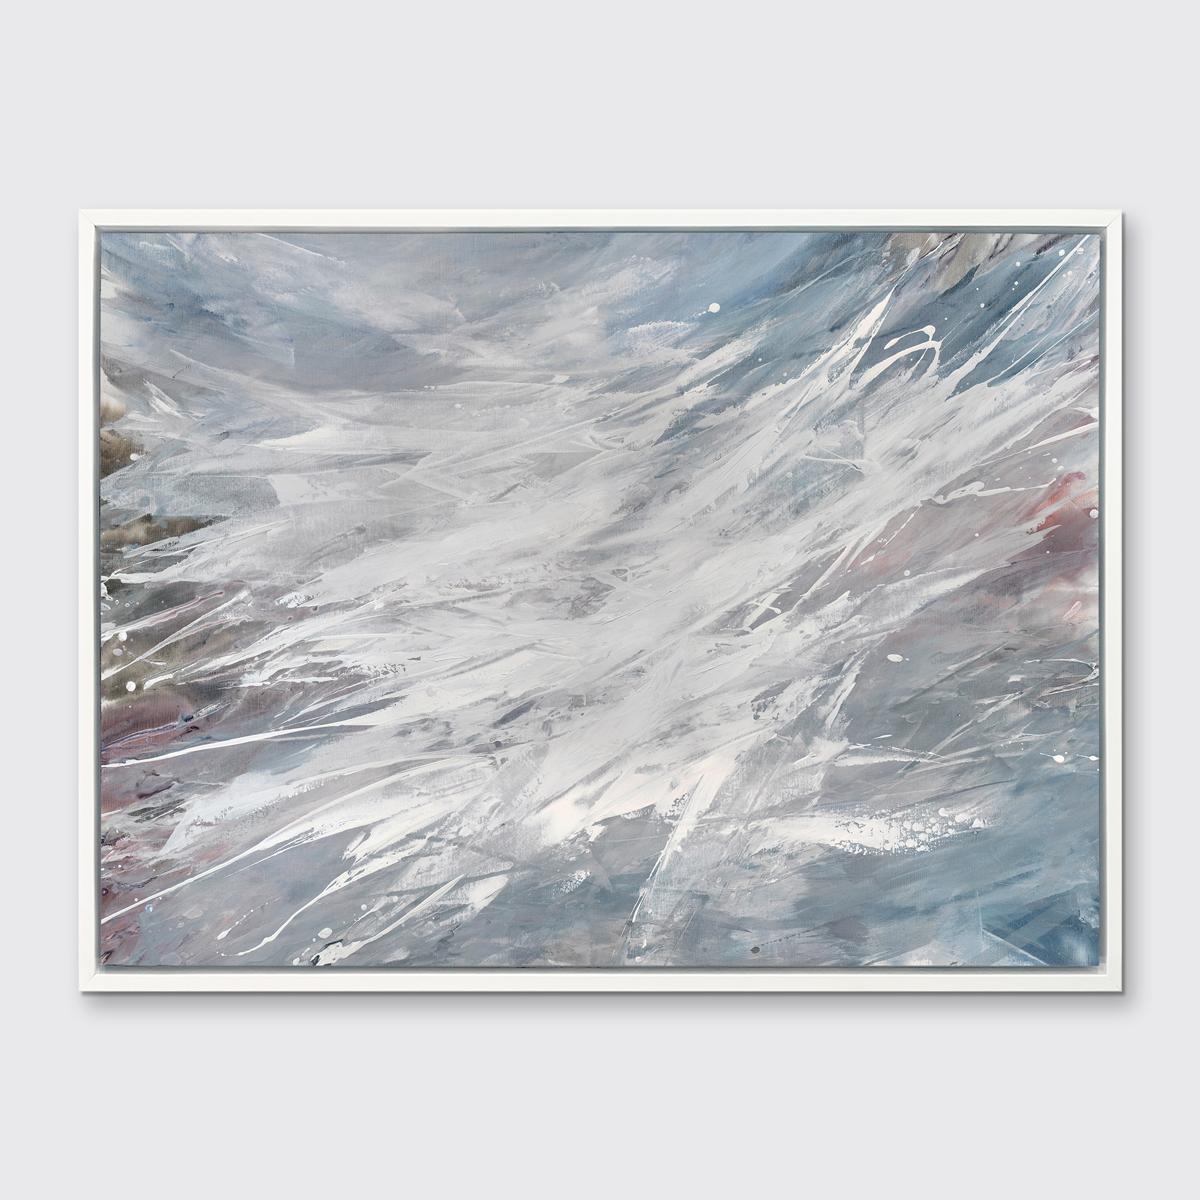 Dieser zeitgenössische abstrakte Druck in limitierter Auflage von Teodora Guererra zeichnet sich durch eine kühle, neutrale graue Farbpalette aus, die von schwungvollen gestischen Strichen überlagert wird. 

Dieser Giclée-Druck in limitierter